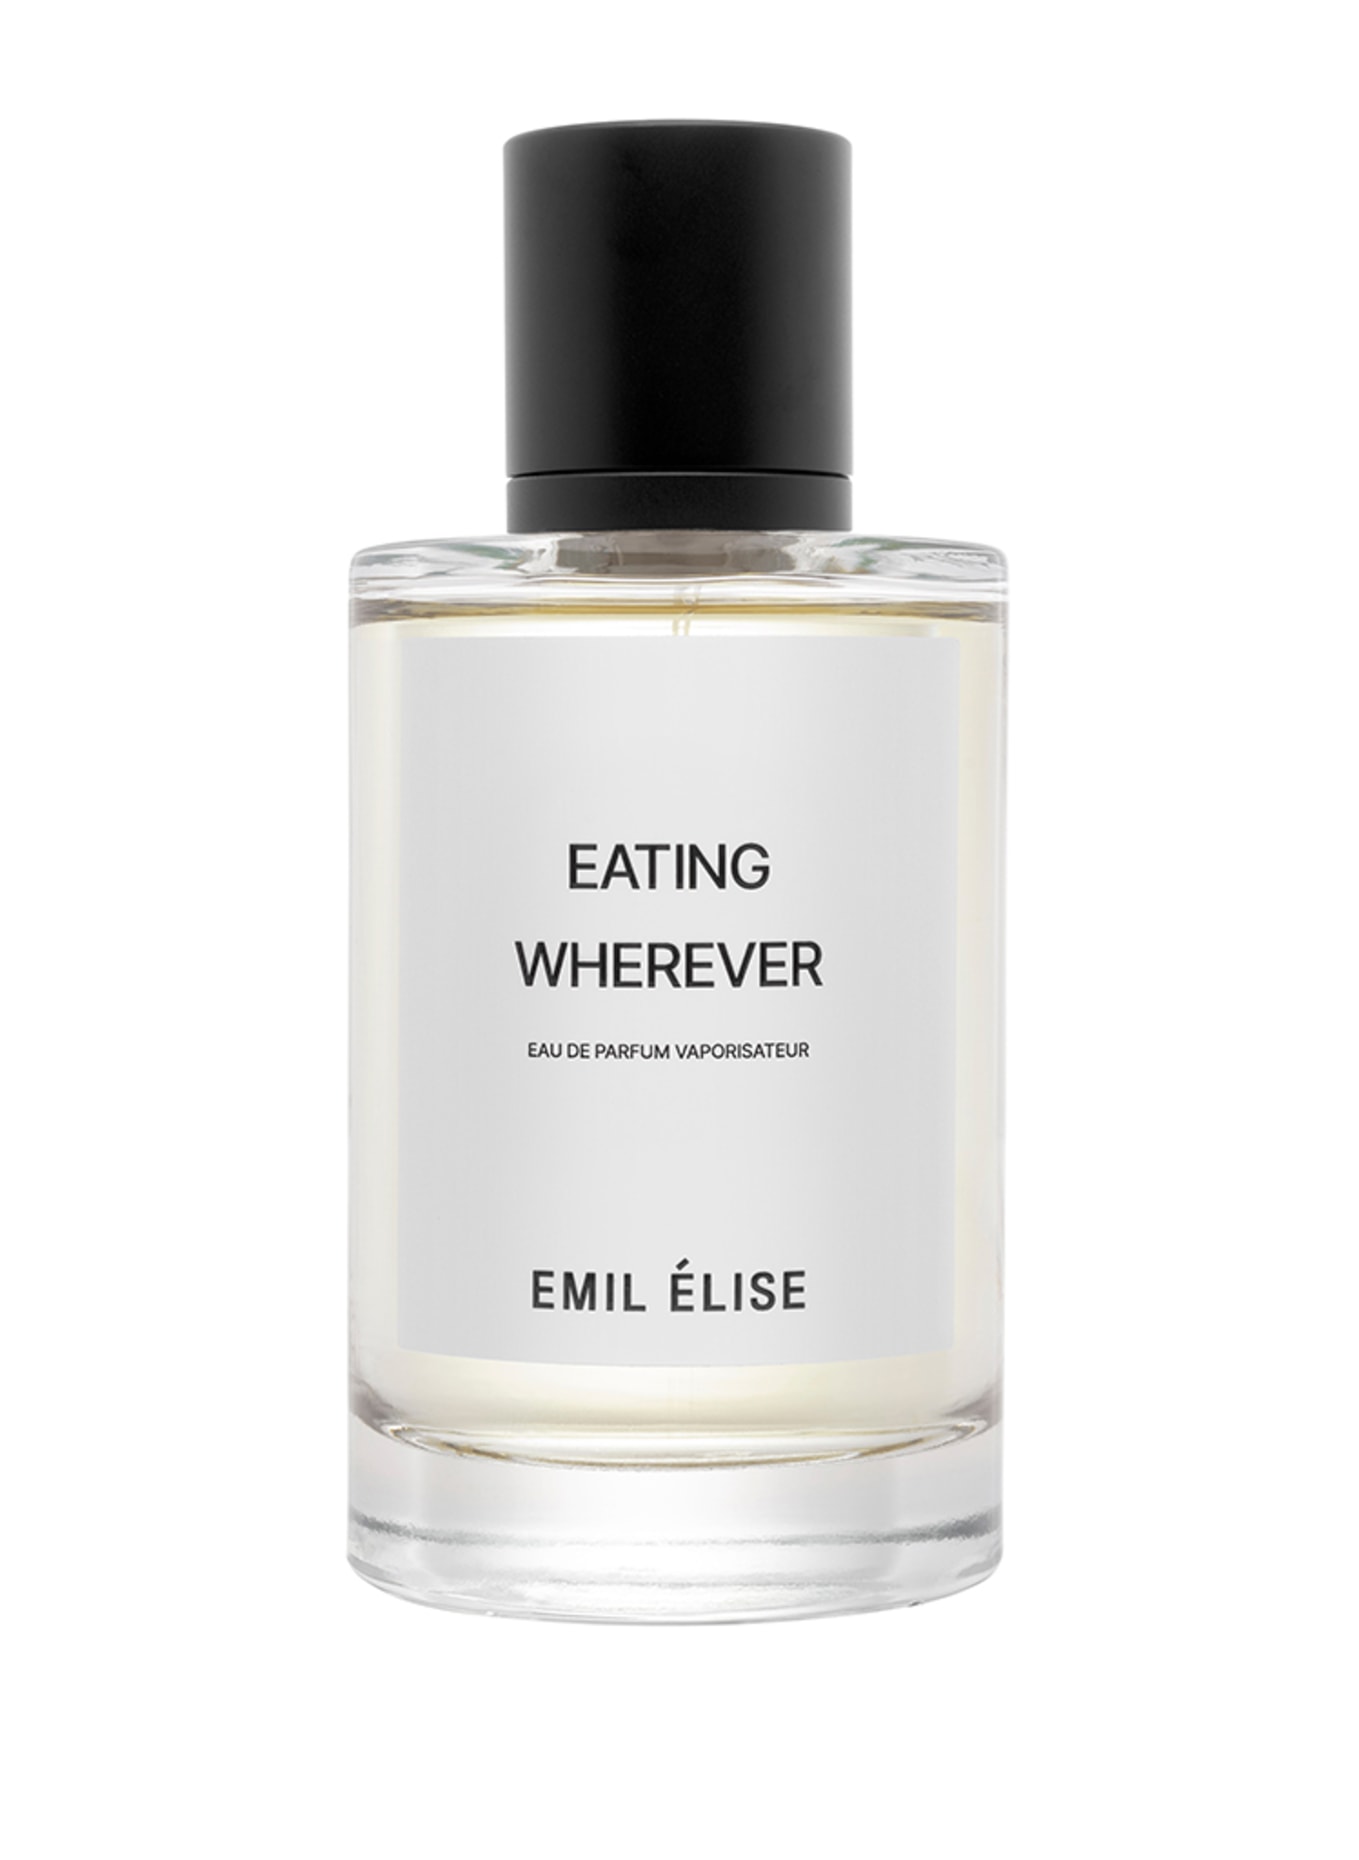 EMIL ÉLISE EATING WHEREVER (Obrázek 1)